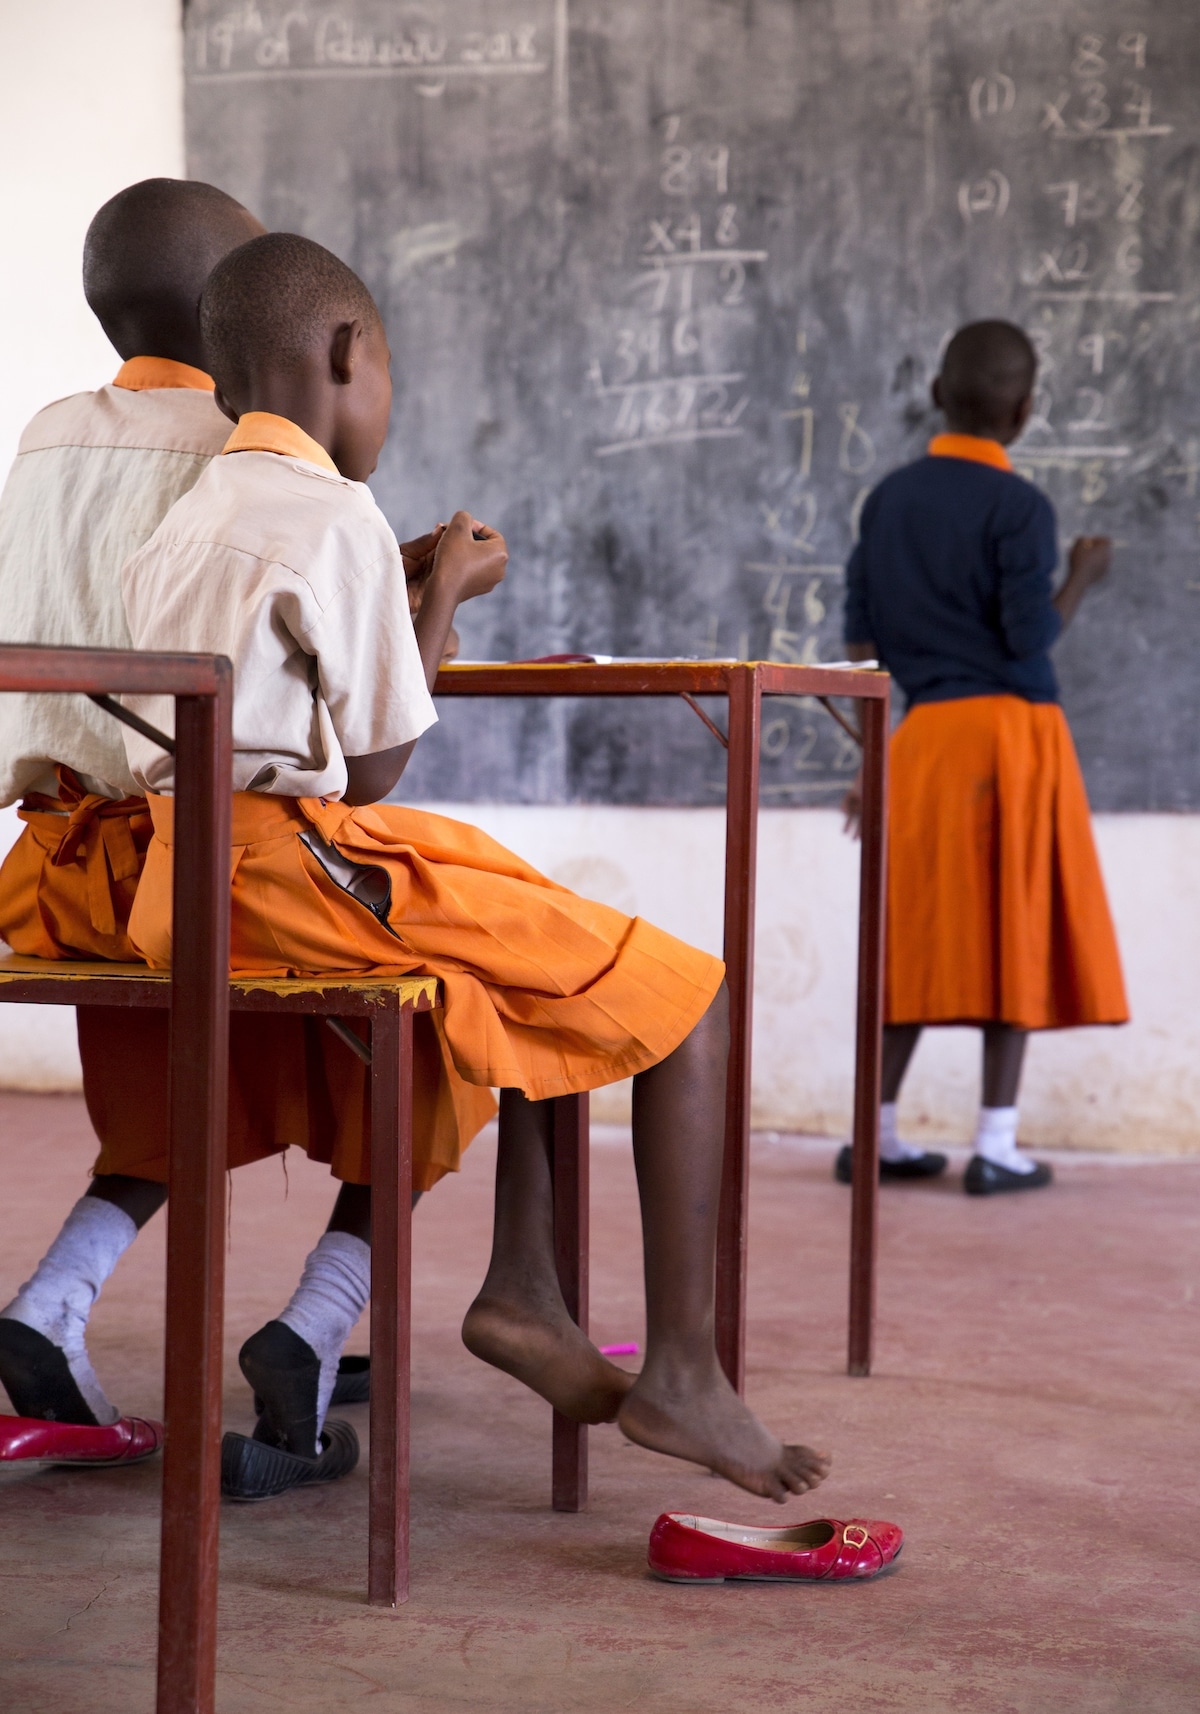 School in Tanzania